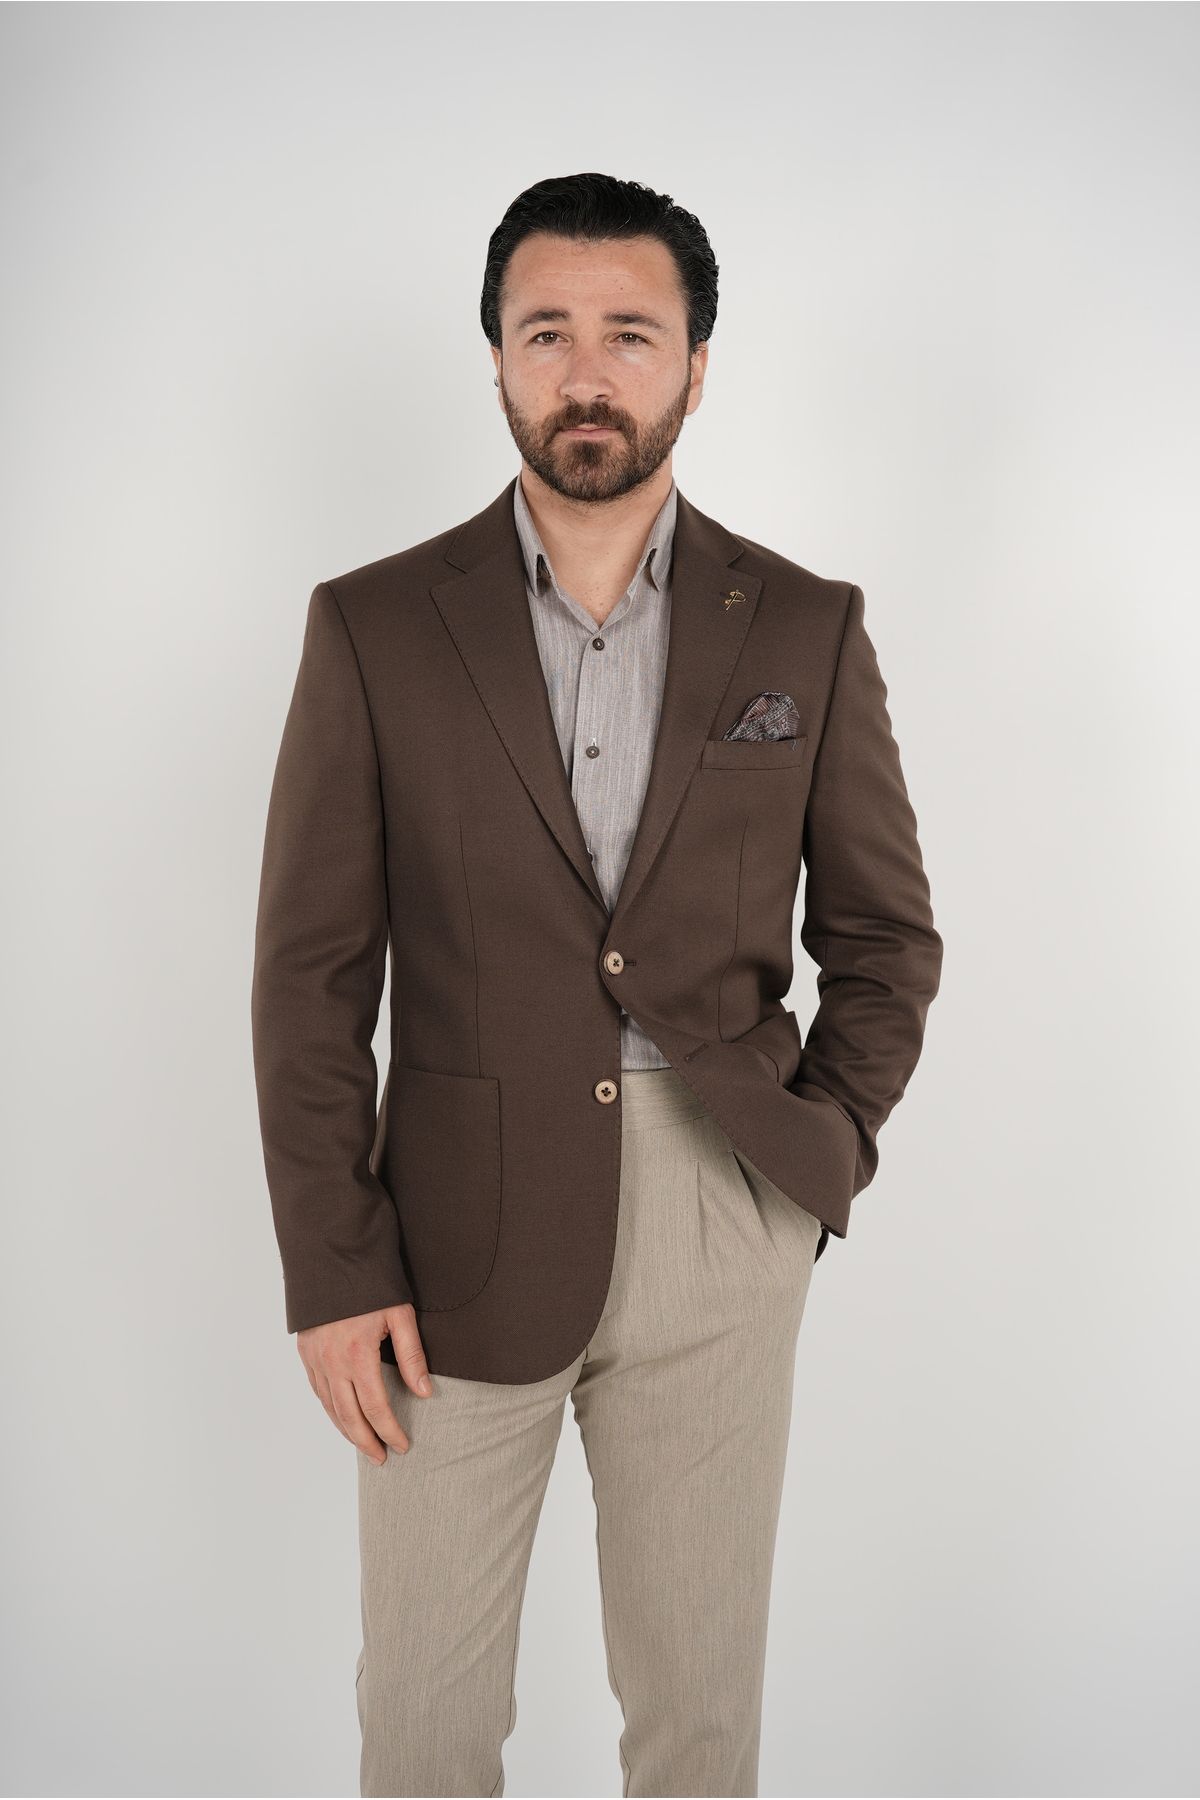 PAREZ Premium İtalyan Stil Slim Fit Erkek Punto Dikişli Torba Cepli Yarım Astarlı Ceket